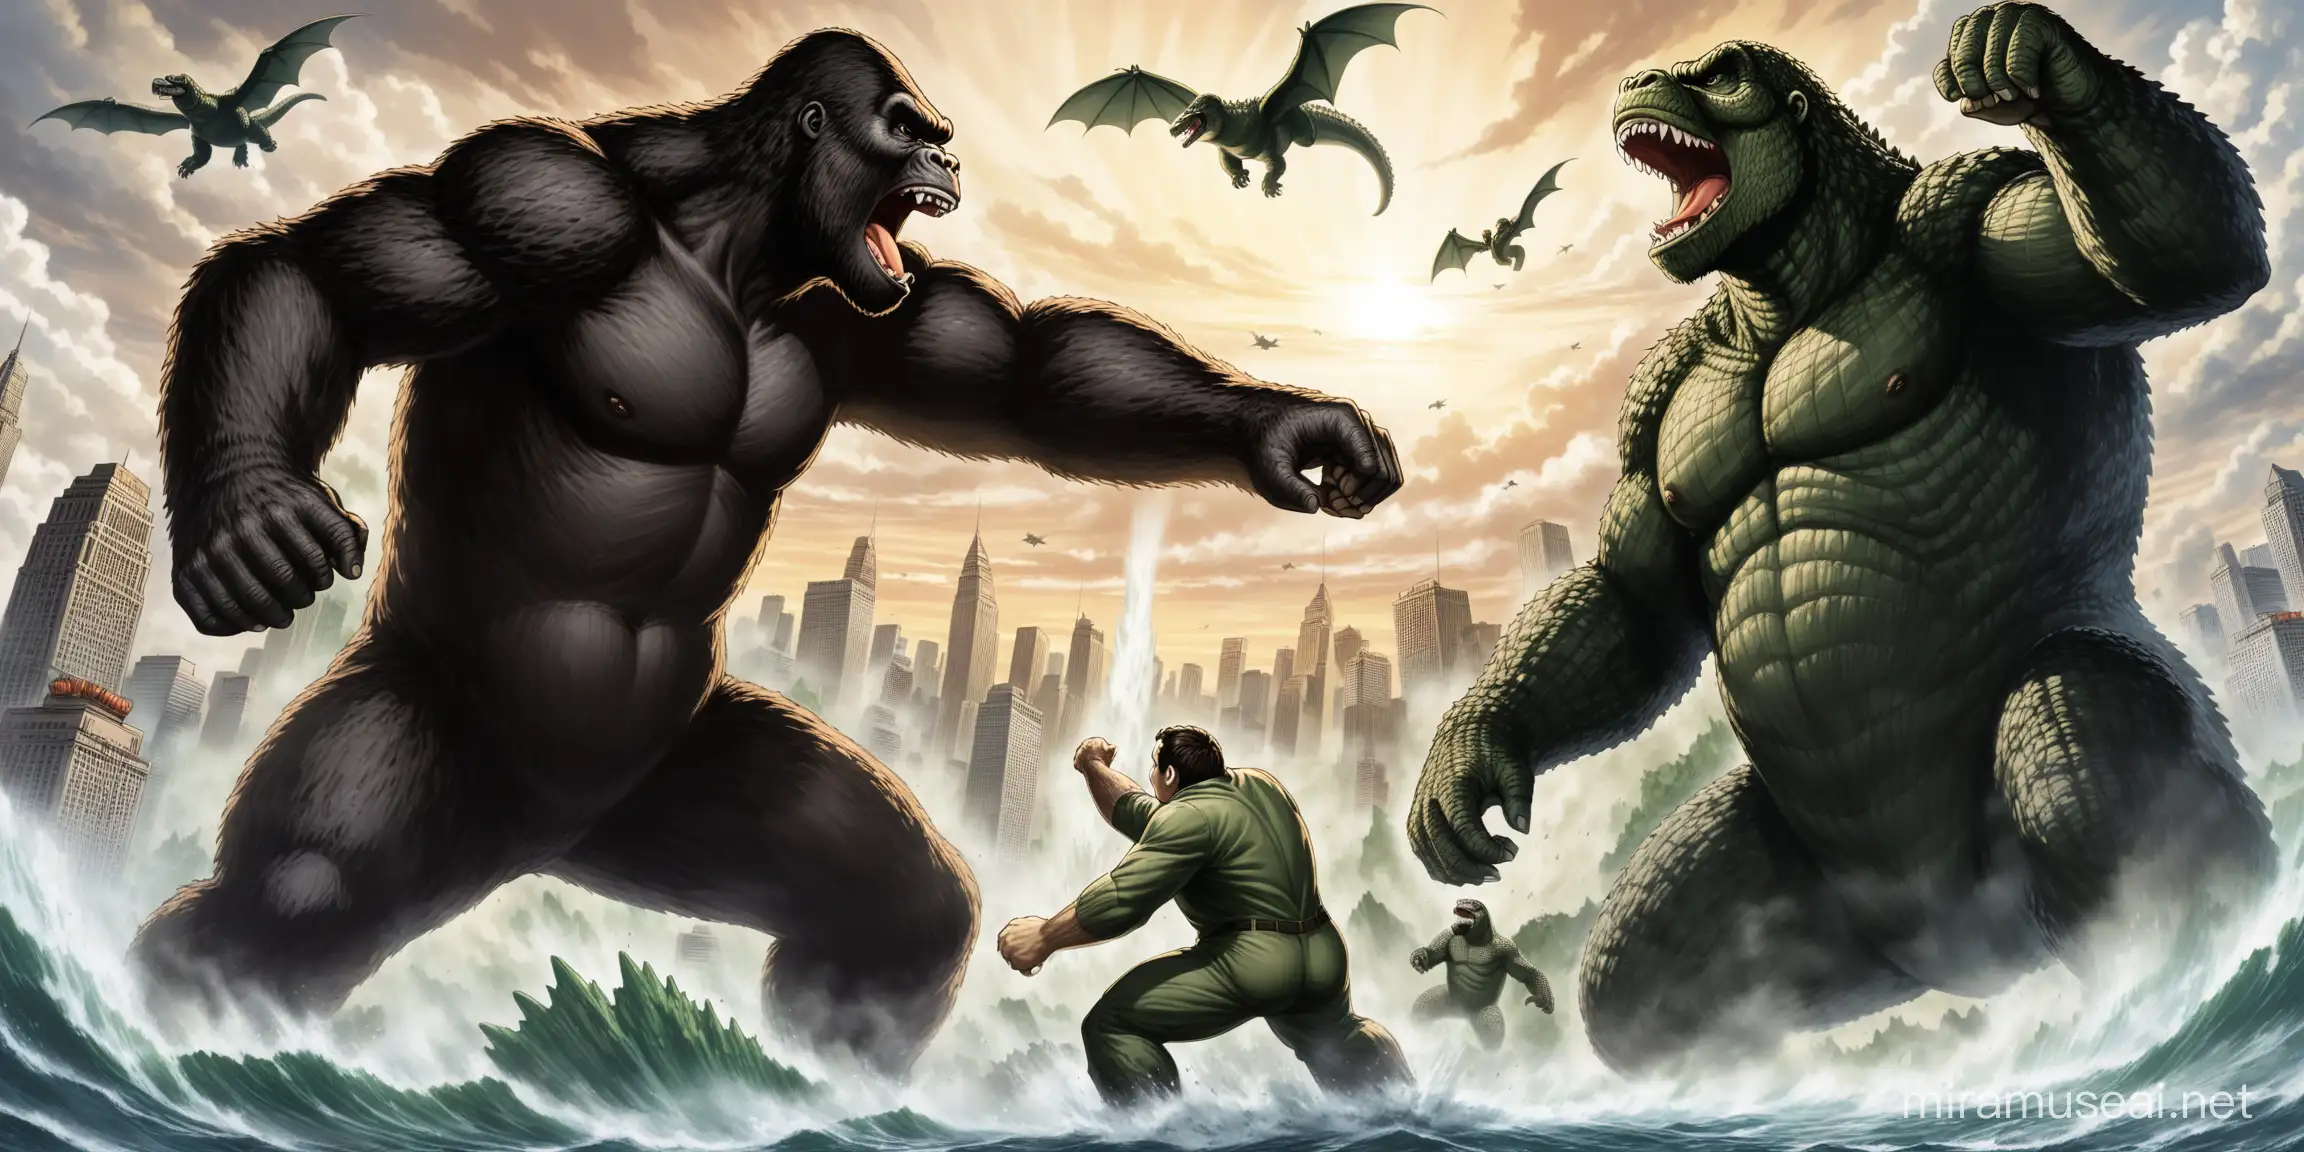 King kong fighting alongside Godzilla 